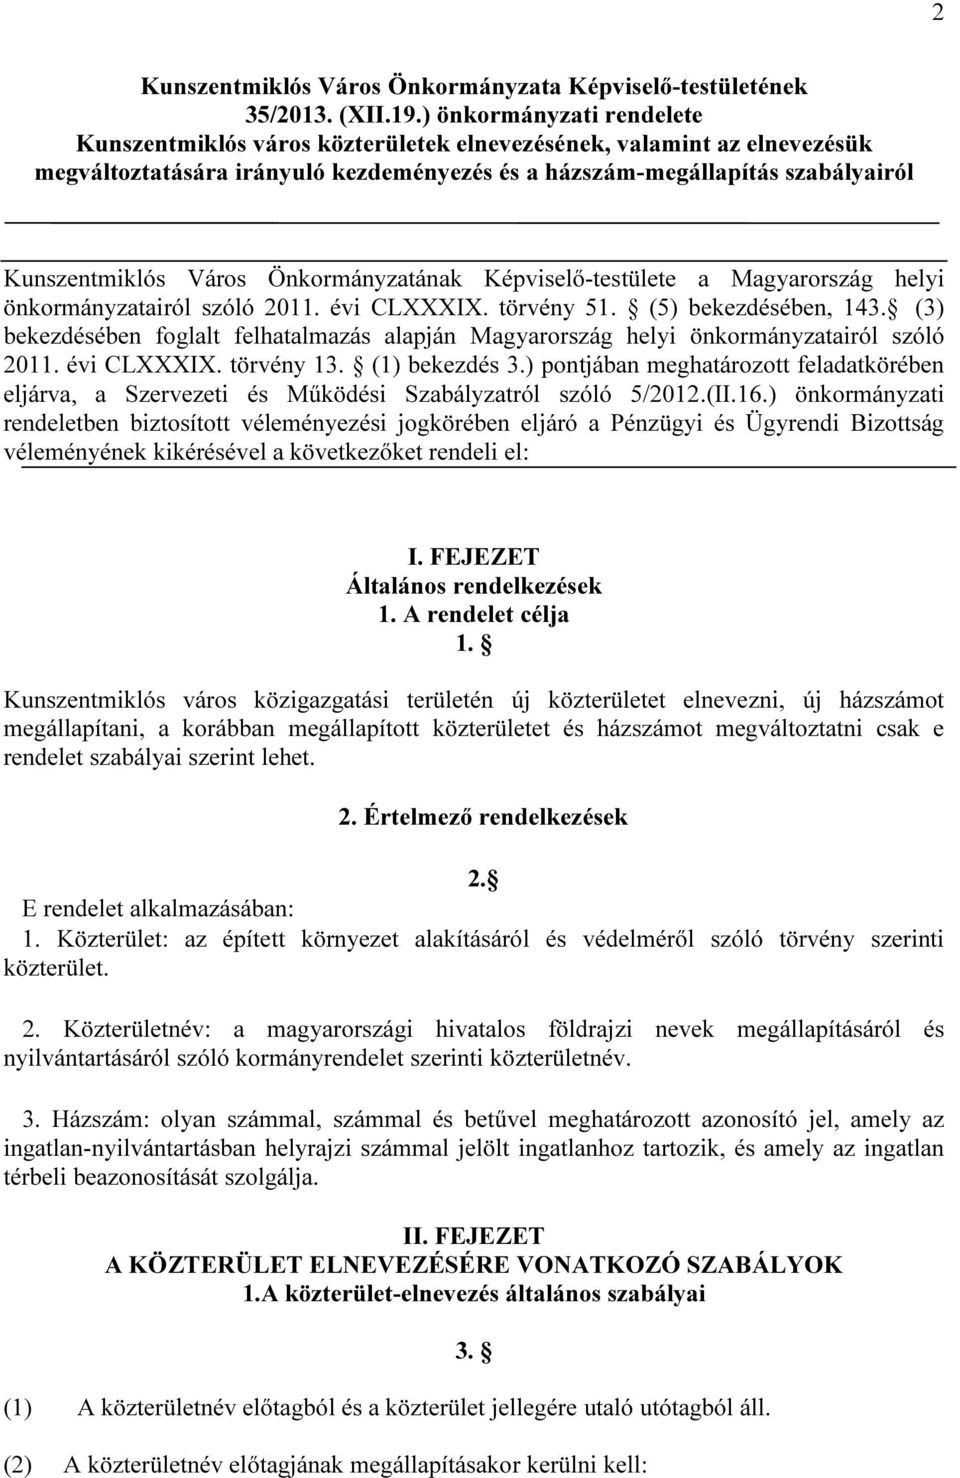 Önkormányzatának Képviselő-testülete a Magyarország helyi önkormányzatairól szóló 2011. évi CLXXXIX. törvény 51. (5) bekezdésében, 143.